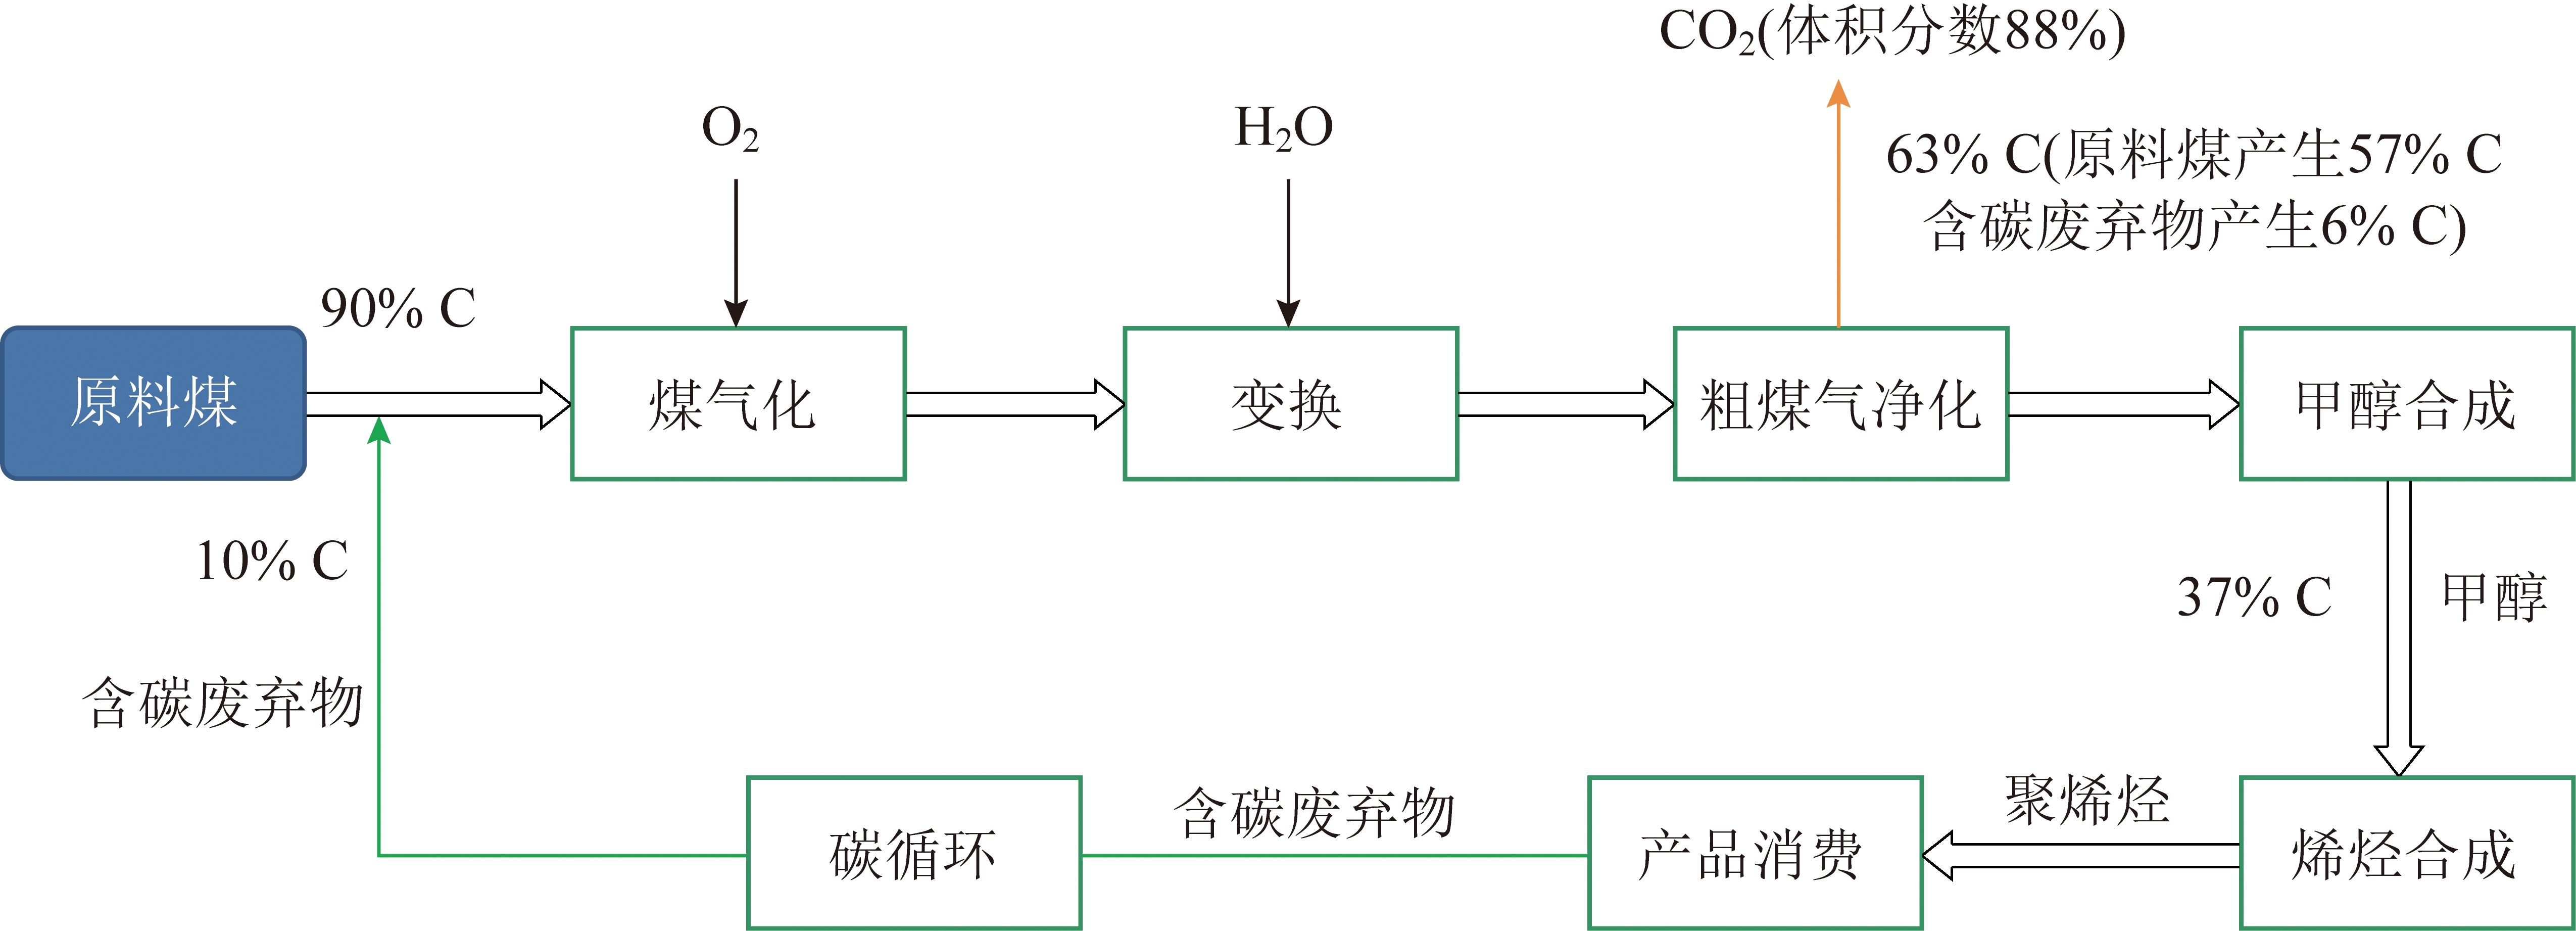 基于含碳废弃物与煤共气化的碳循环概念及碳减排潜力分析